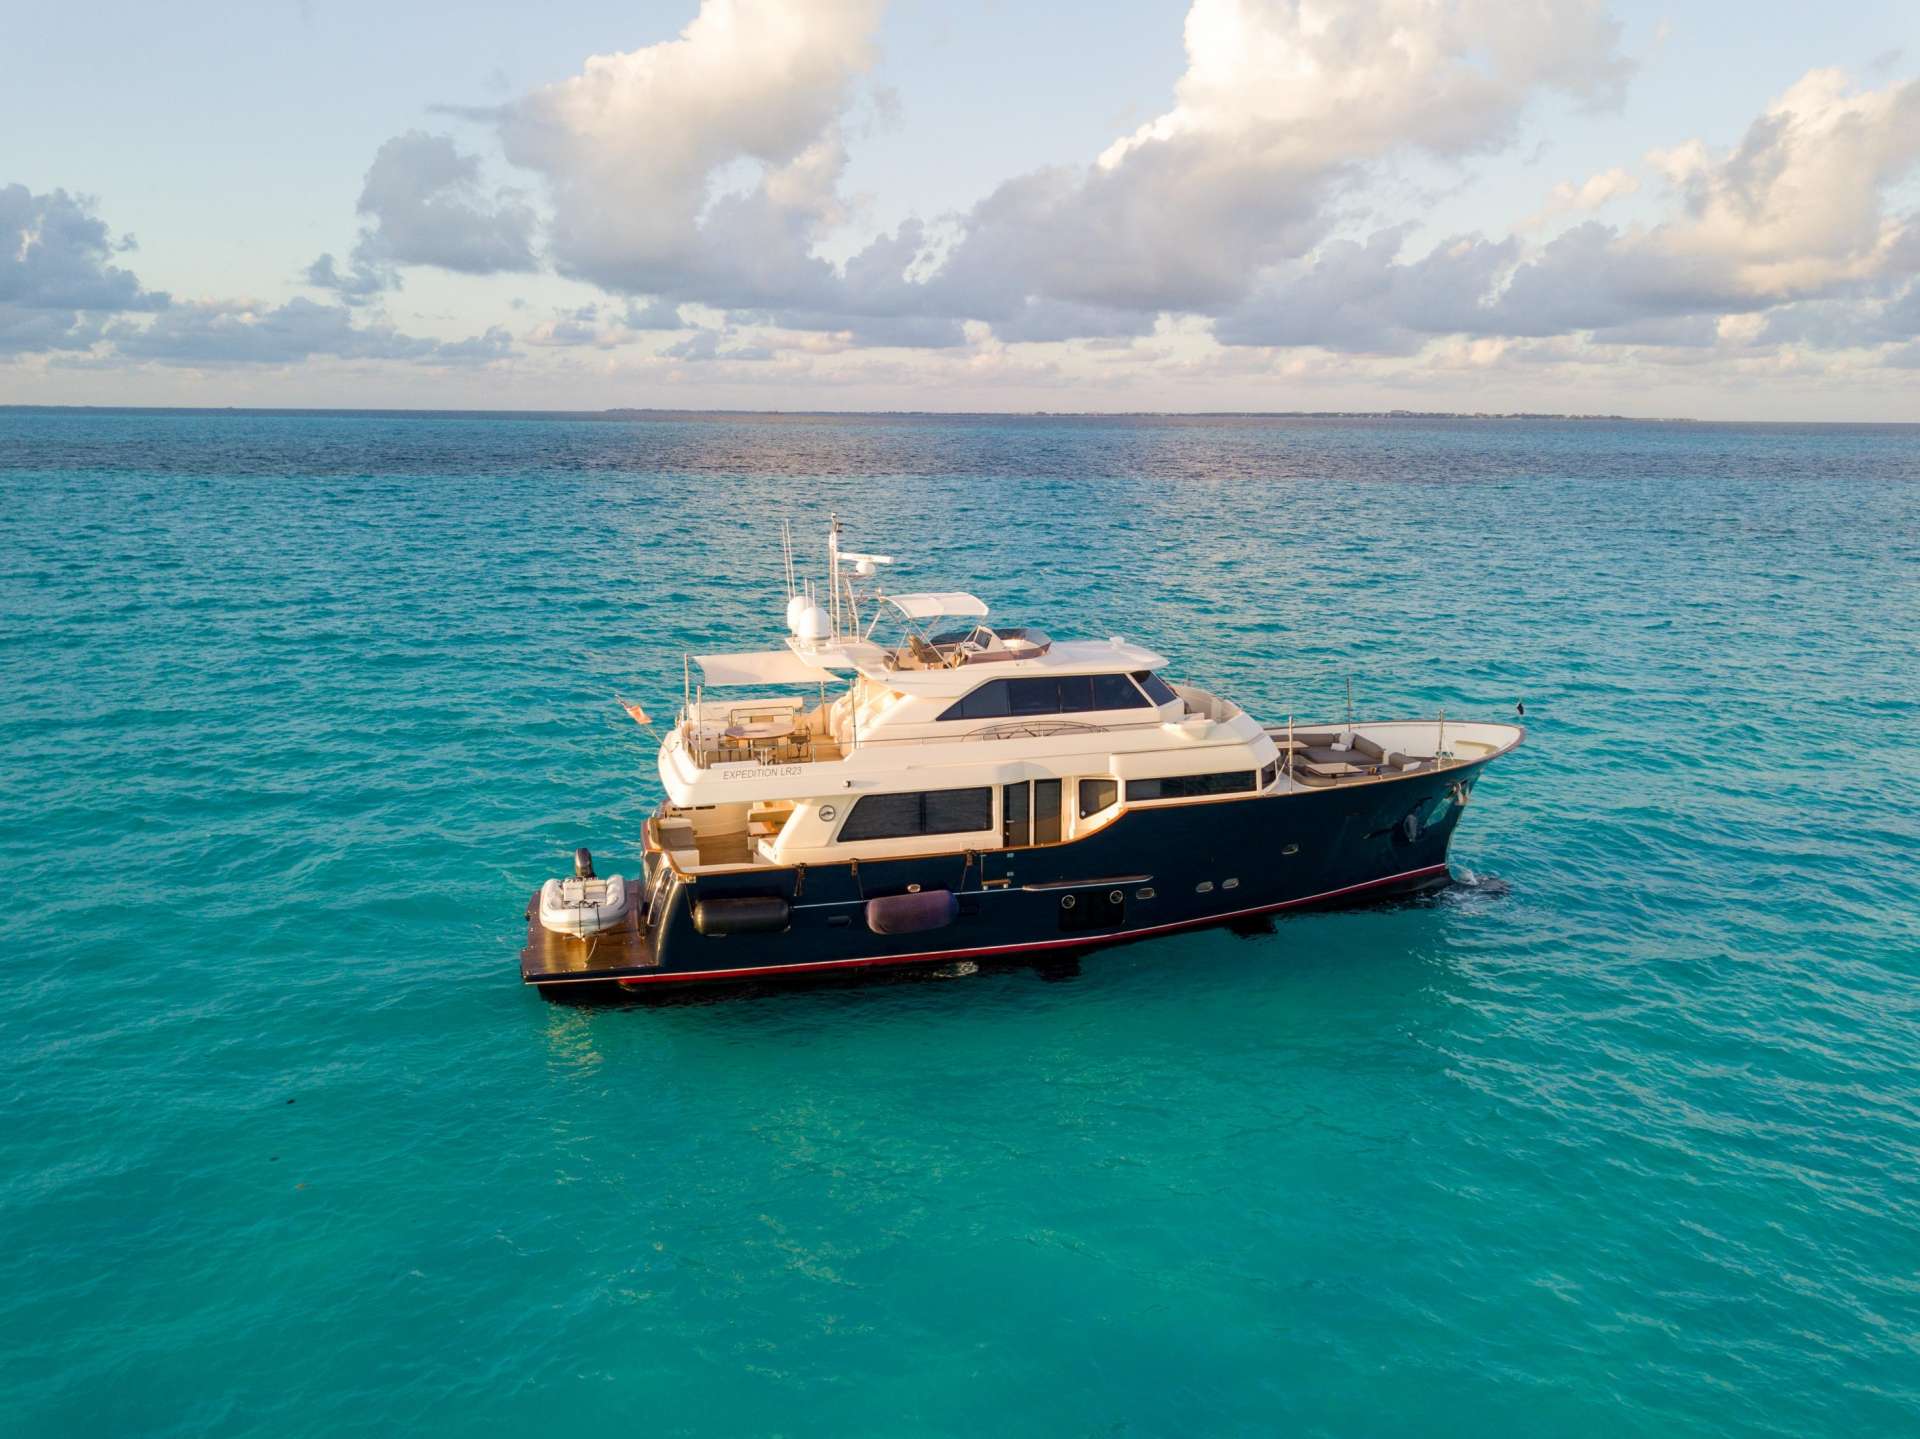 nomada - Yacht Charter La Paz & Boat hire in US East Coast, Bahamas & Mexico 1